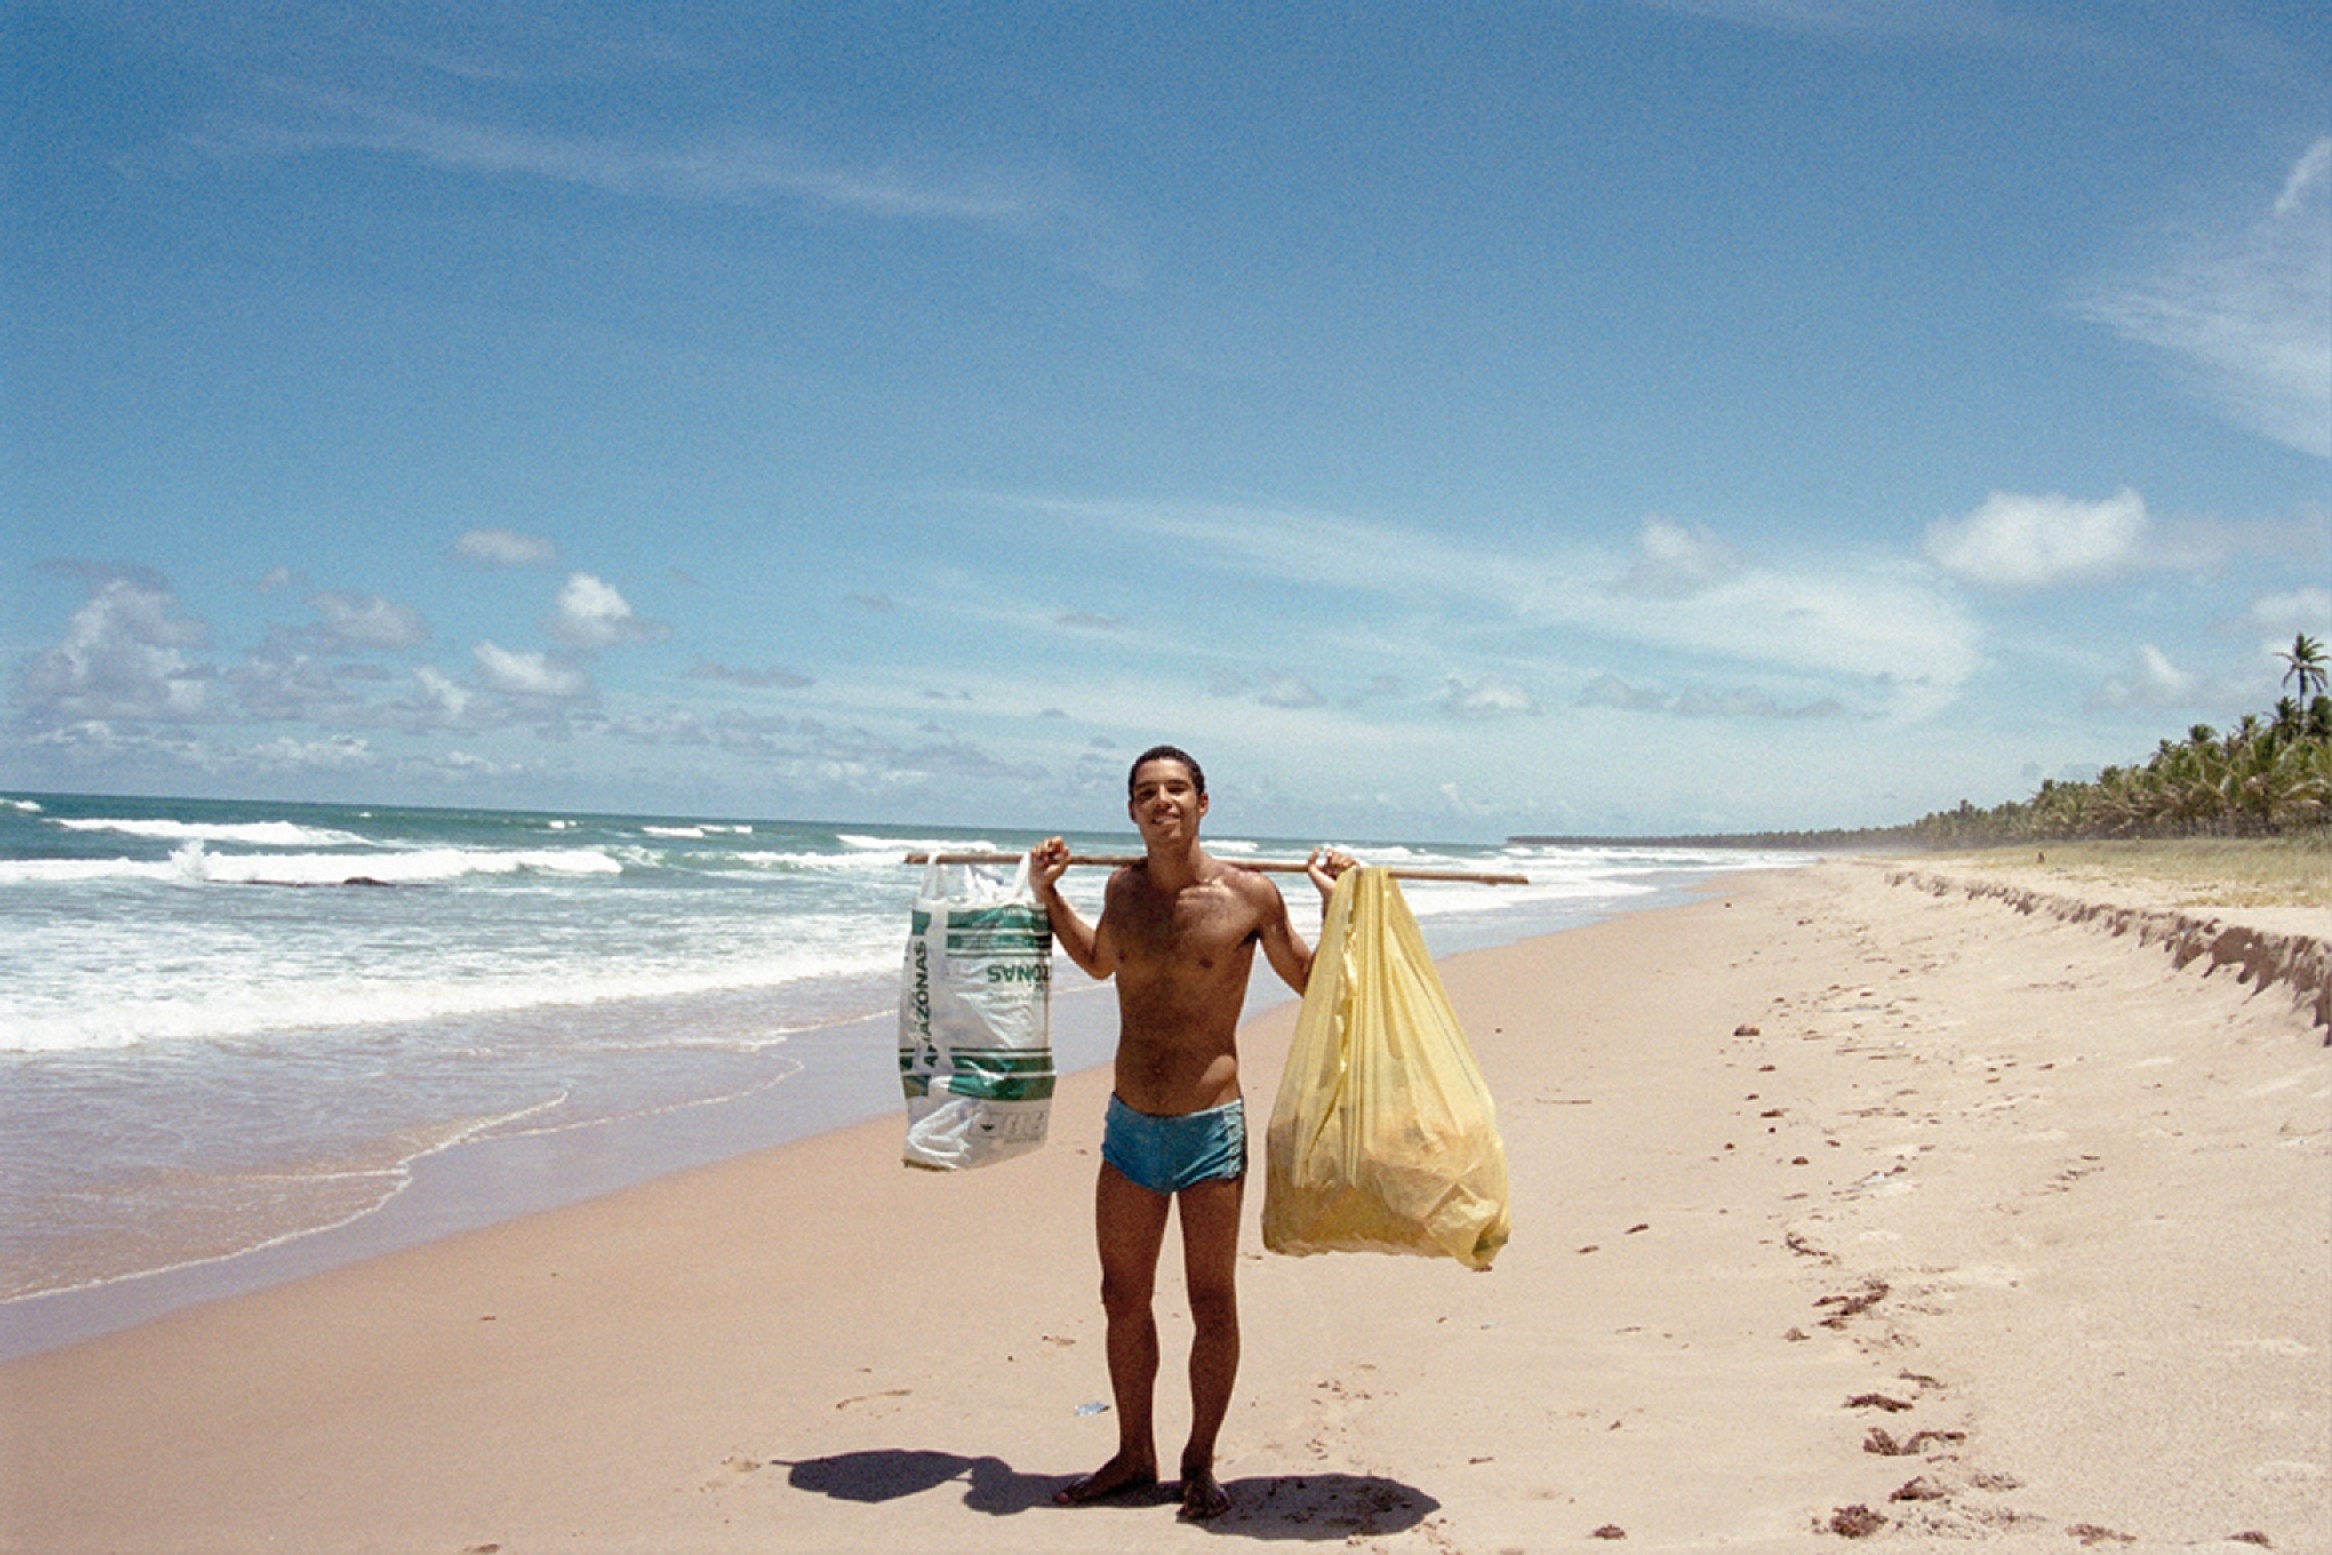 Fabiano Prado Barretto: Fotógrafo e surfista, 40 anos - Fundador da Global Garbage, ONG empenhada em manter limpas as praias brasileiras